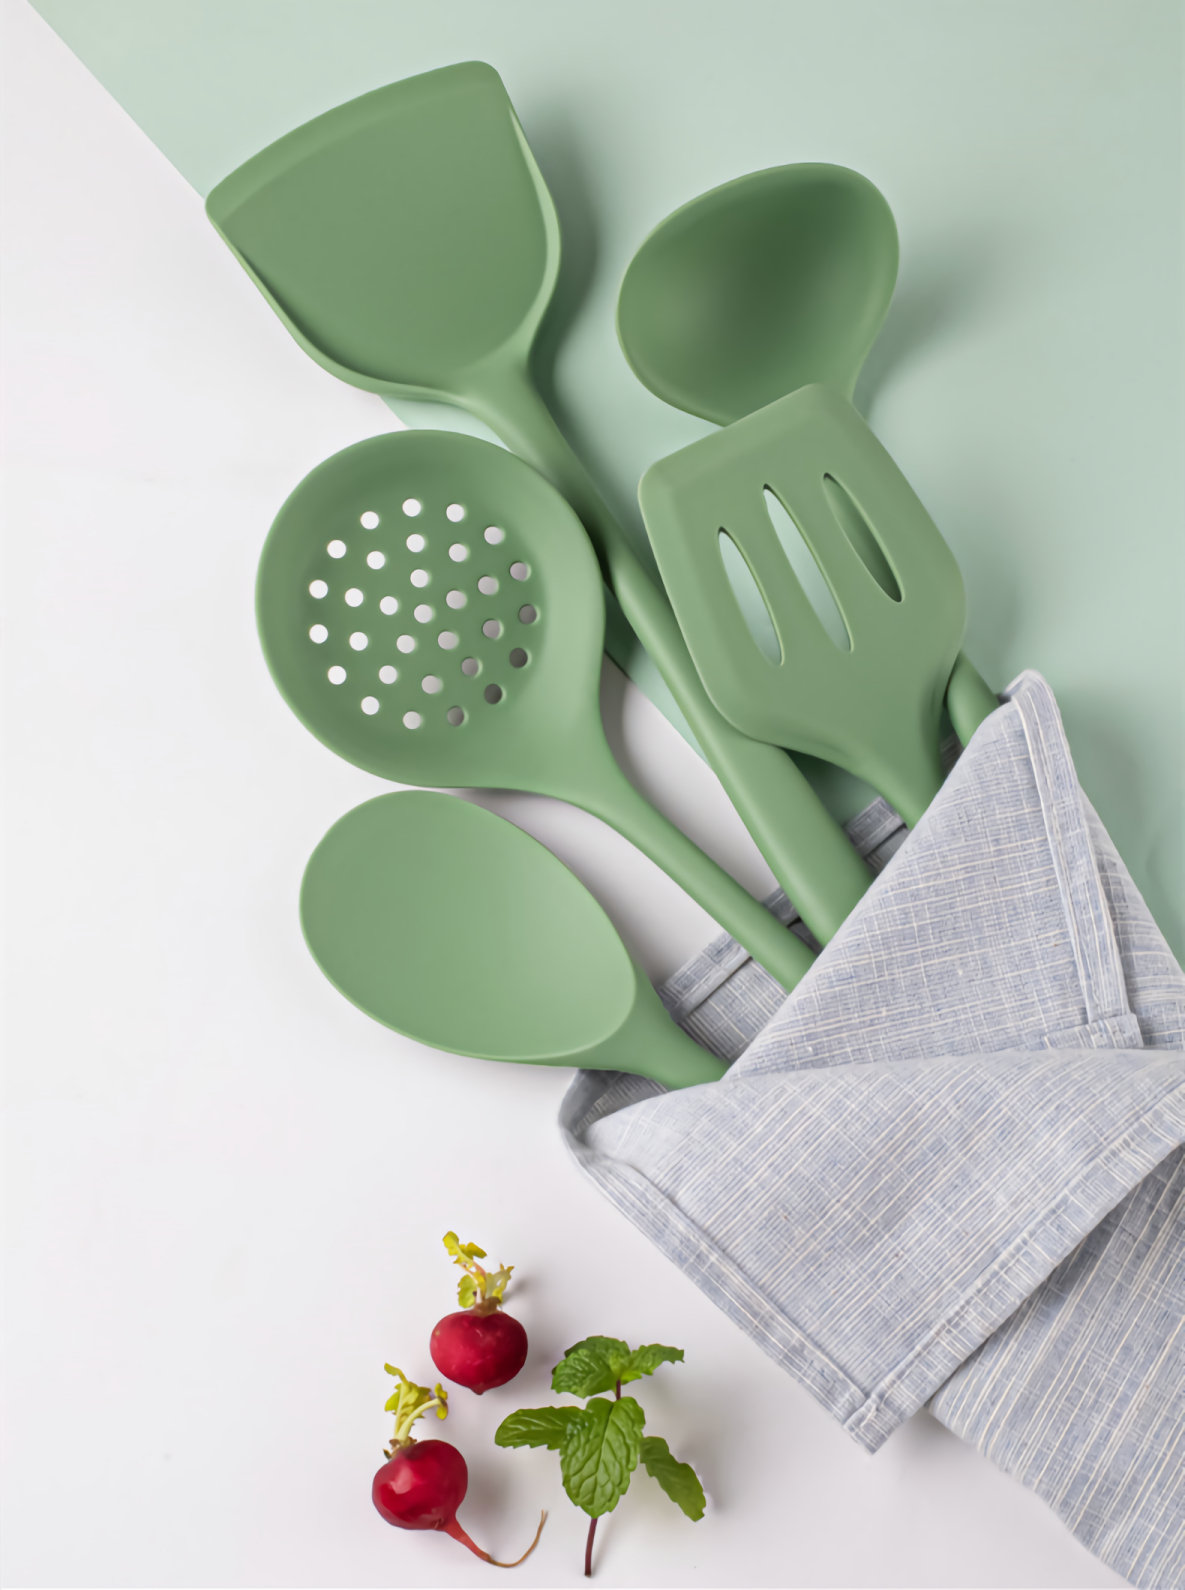 https://assets.wfcdn.com/im/64368256/compr-r85/2190/219043951/ensemble-dustensiles-de-cuisine-en-silicone-vert-5-pieces-resistant-a-la-chaleur-ustensiles-de-cuisine-cuillere-a-soupe-spatule-accessoires-de-cuisine-fournitures.jpg